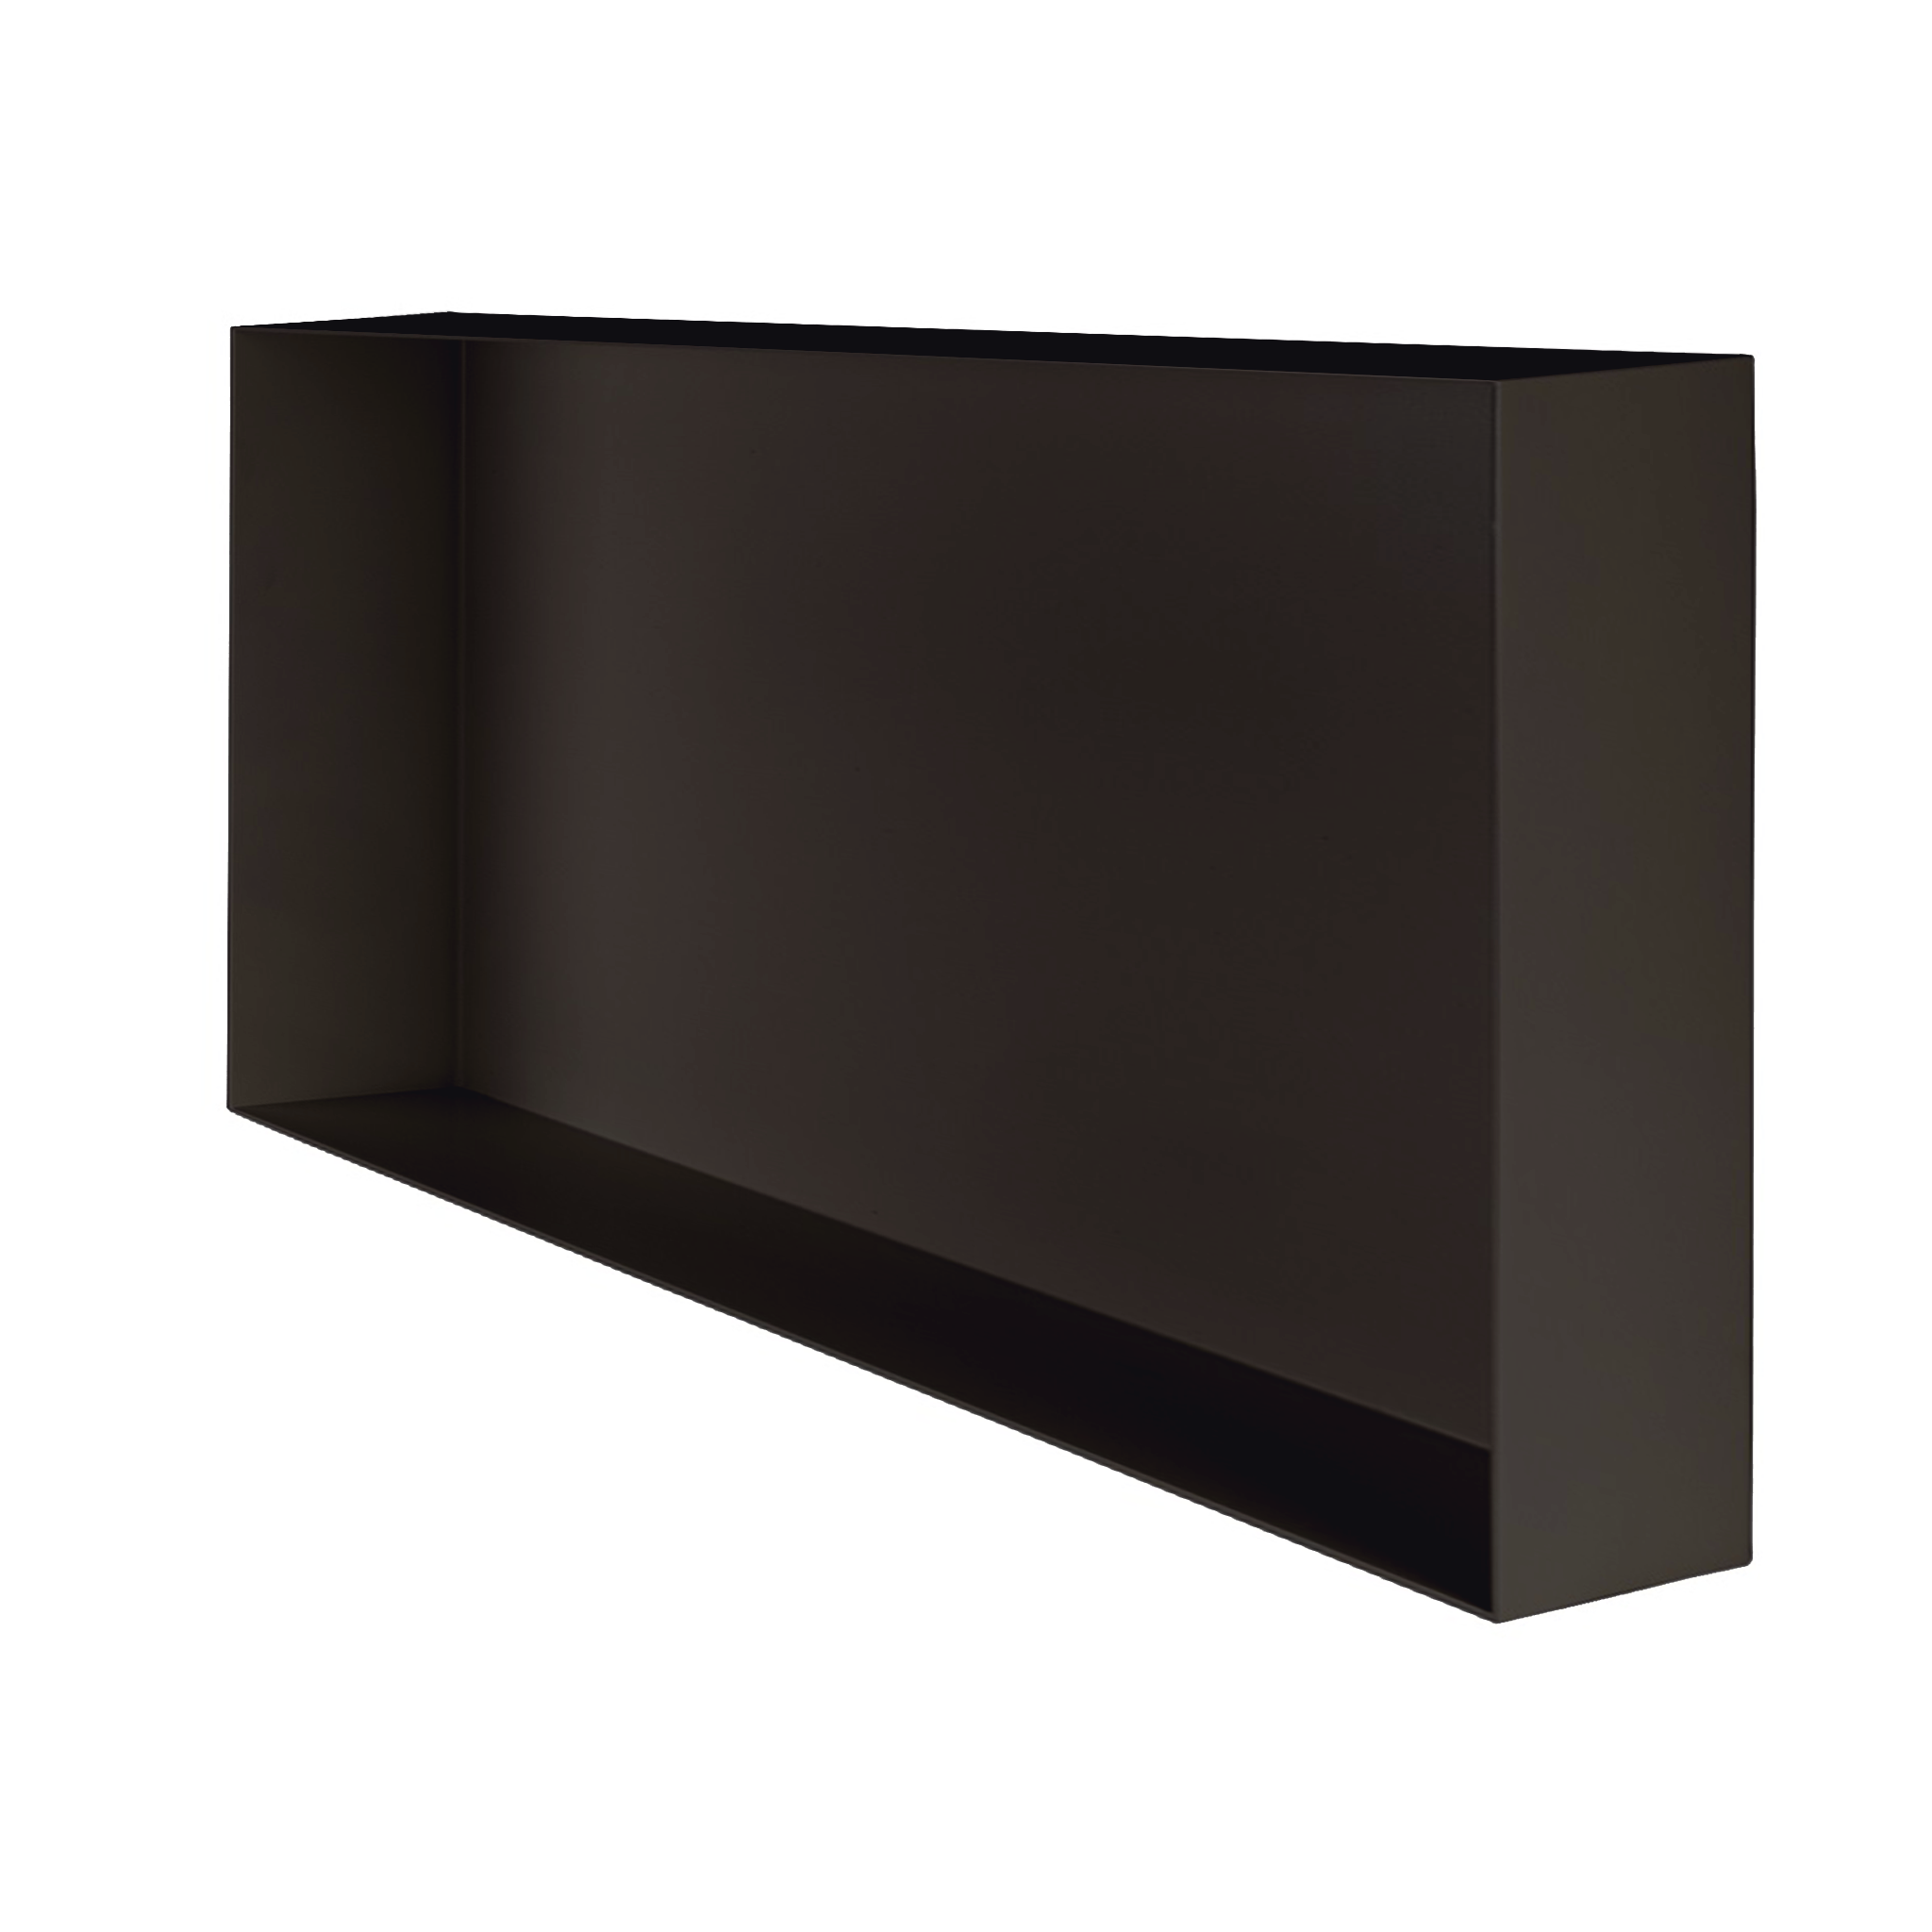 Valli Home – V-Box, Nicchia portaoggetti in Metallo smaltato color Grigio Scurissimo KK73, Misura 30X60 P. 10 cm – V-BOX.MLLO.30X60.73